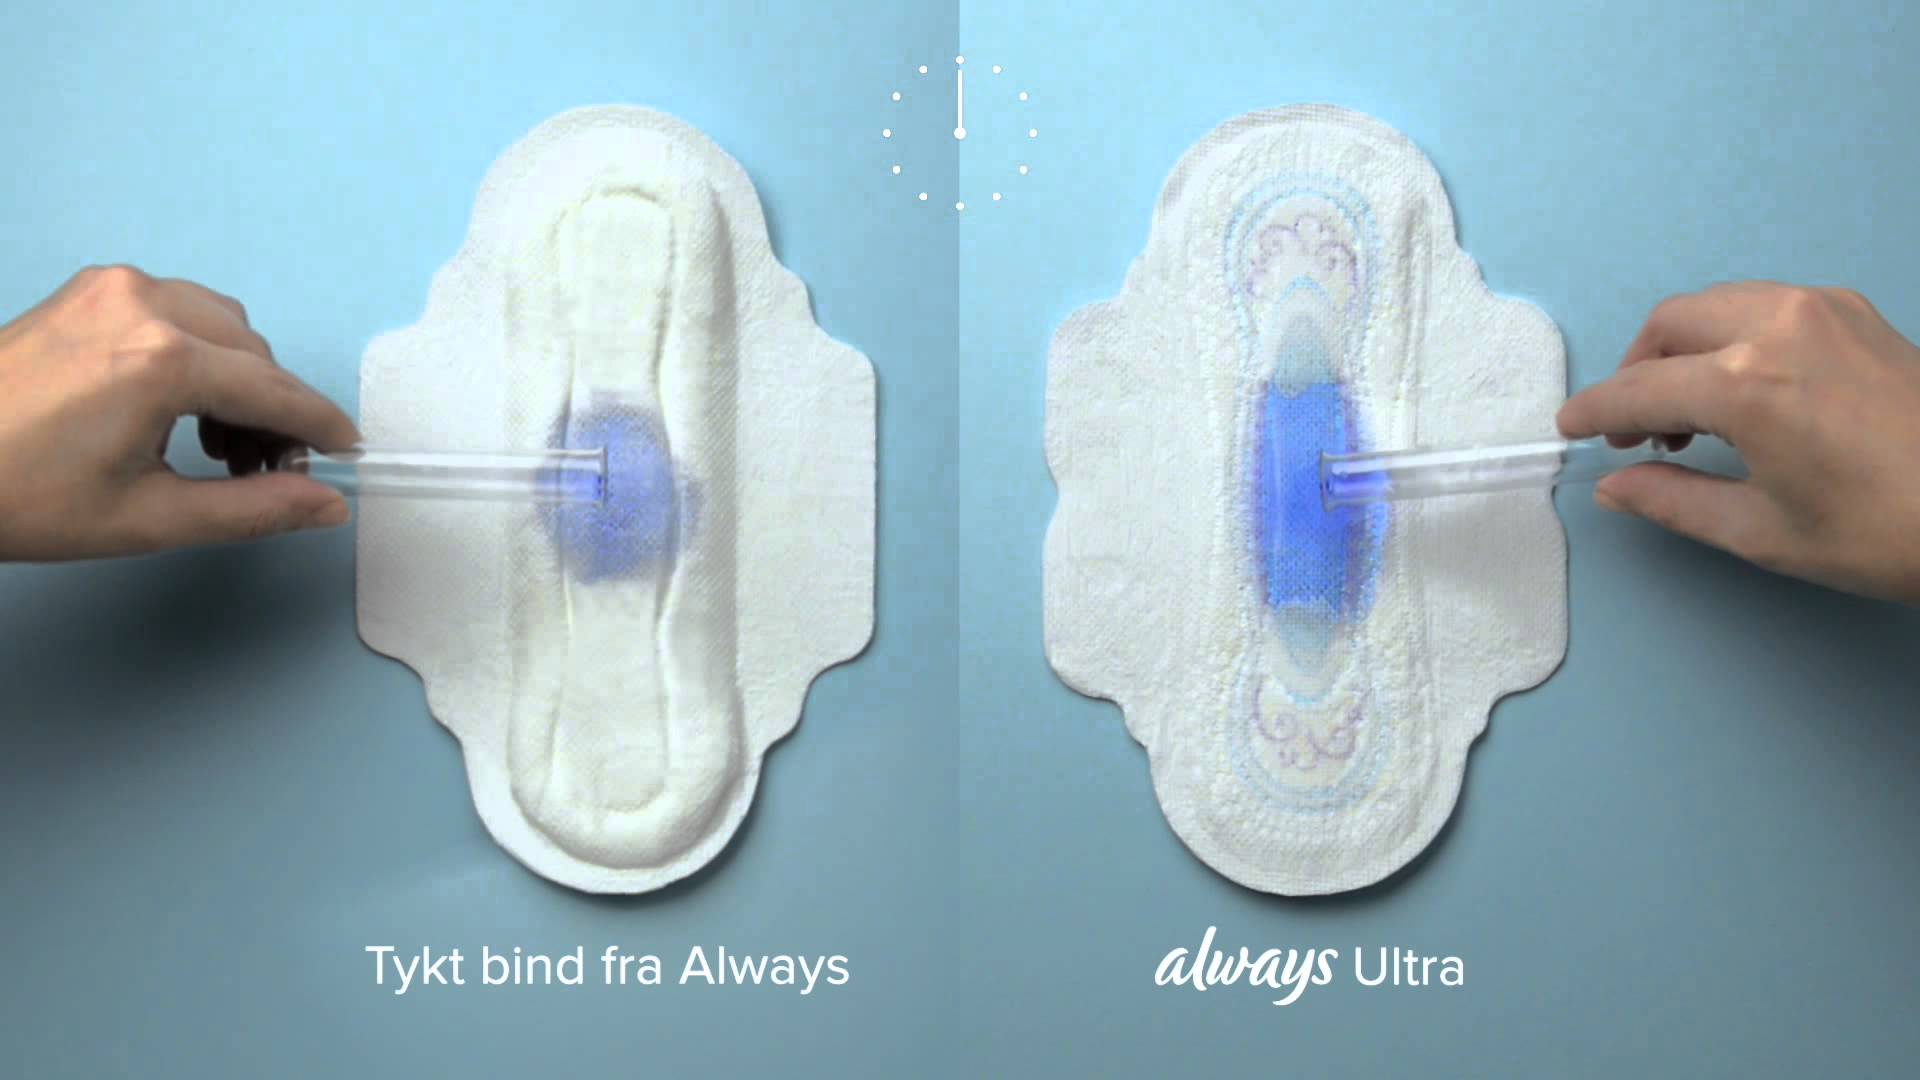 ads period pads blue liquid